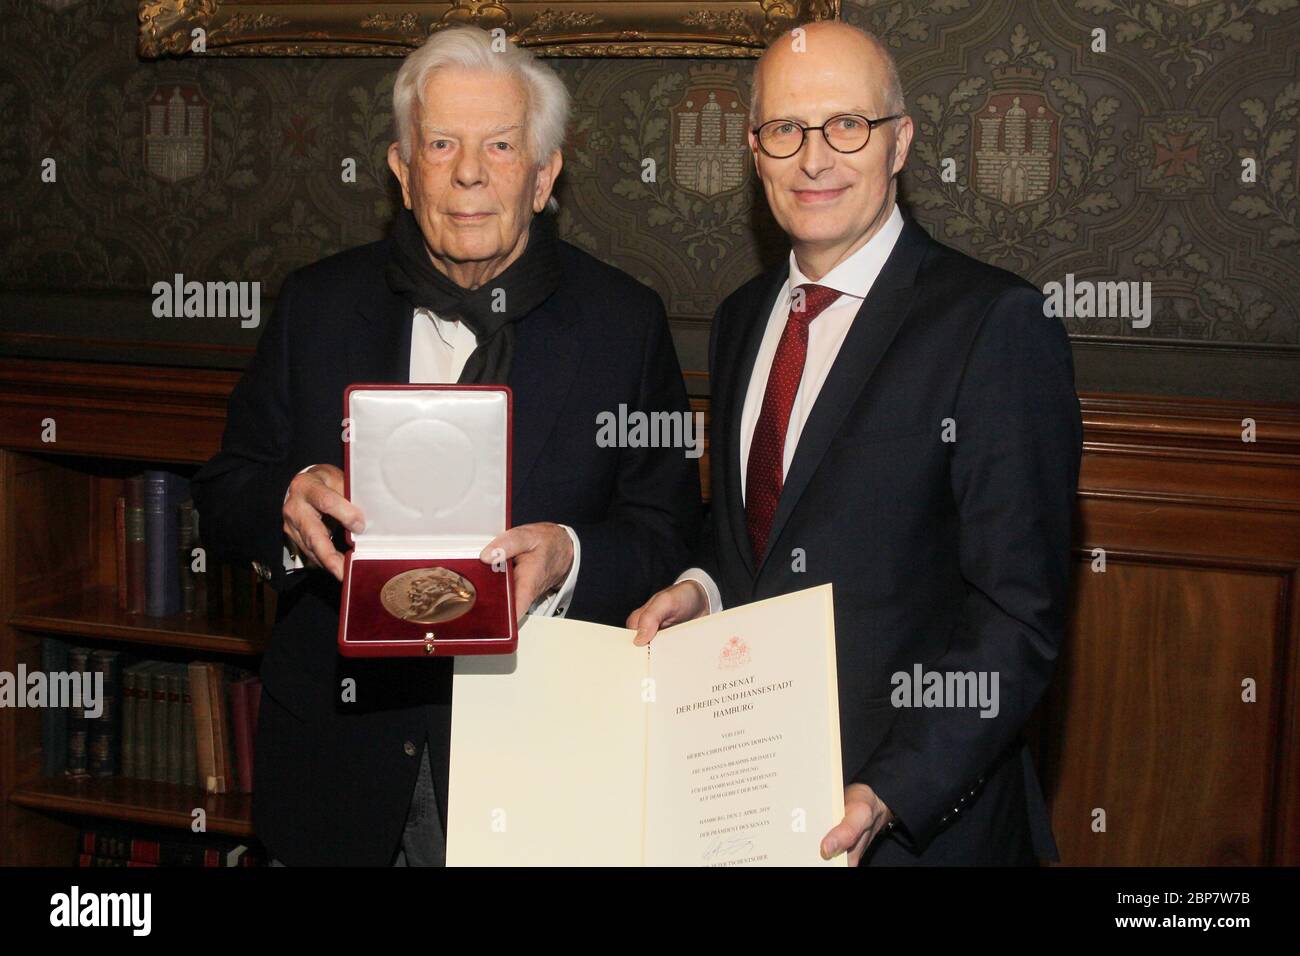 Christoph von Dohnanyi,Peter Tschentscher,entrega de premios de la Medalla Brahms,Ayuntamiento de Hamburgo,13.01.2020 Foto de stock